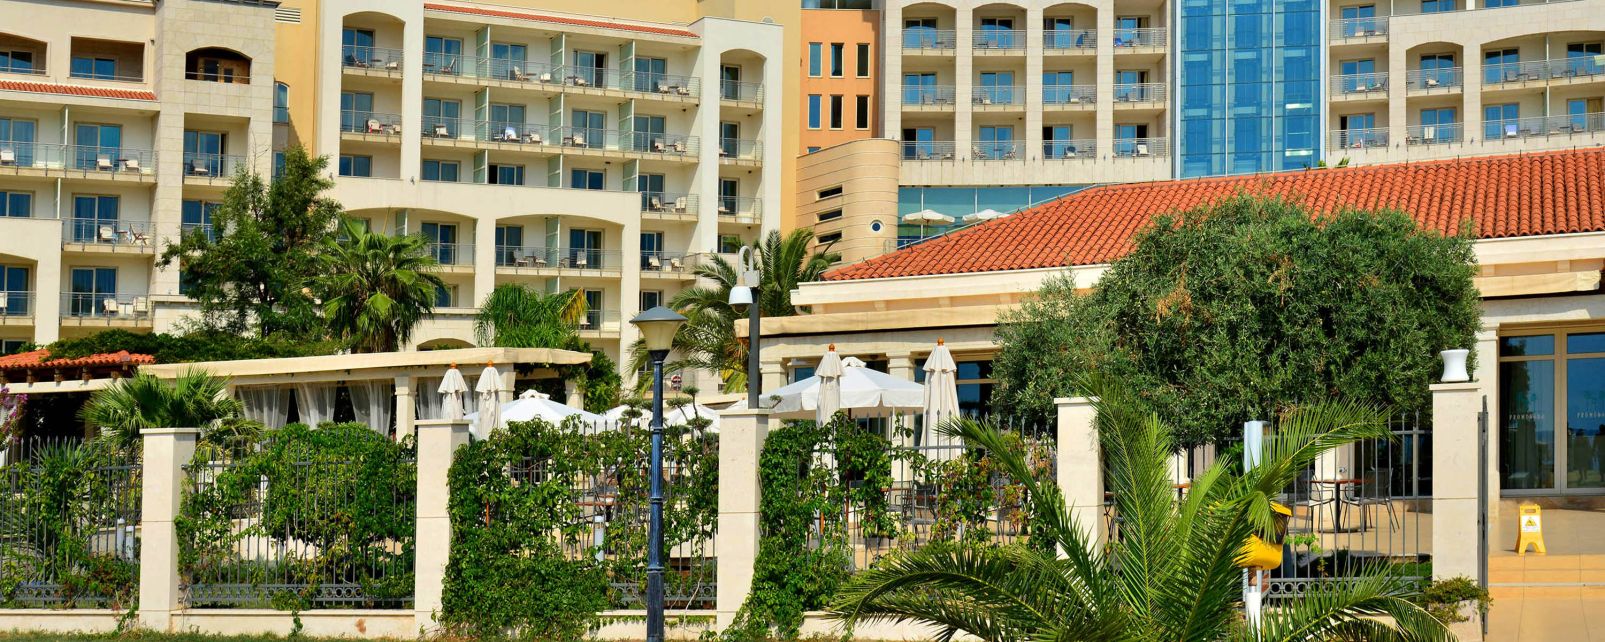 Hôtel Splendid Conference and Spa Resort